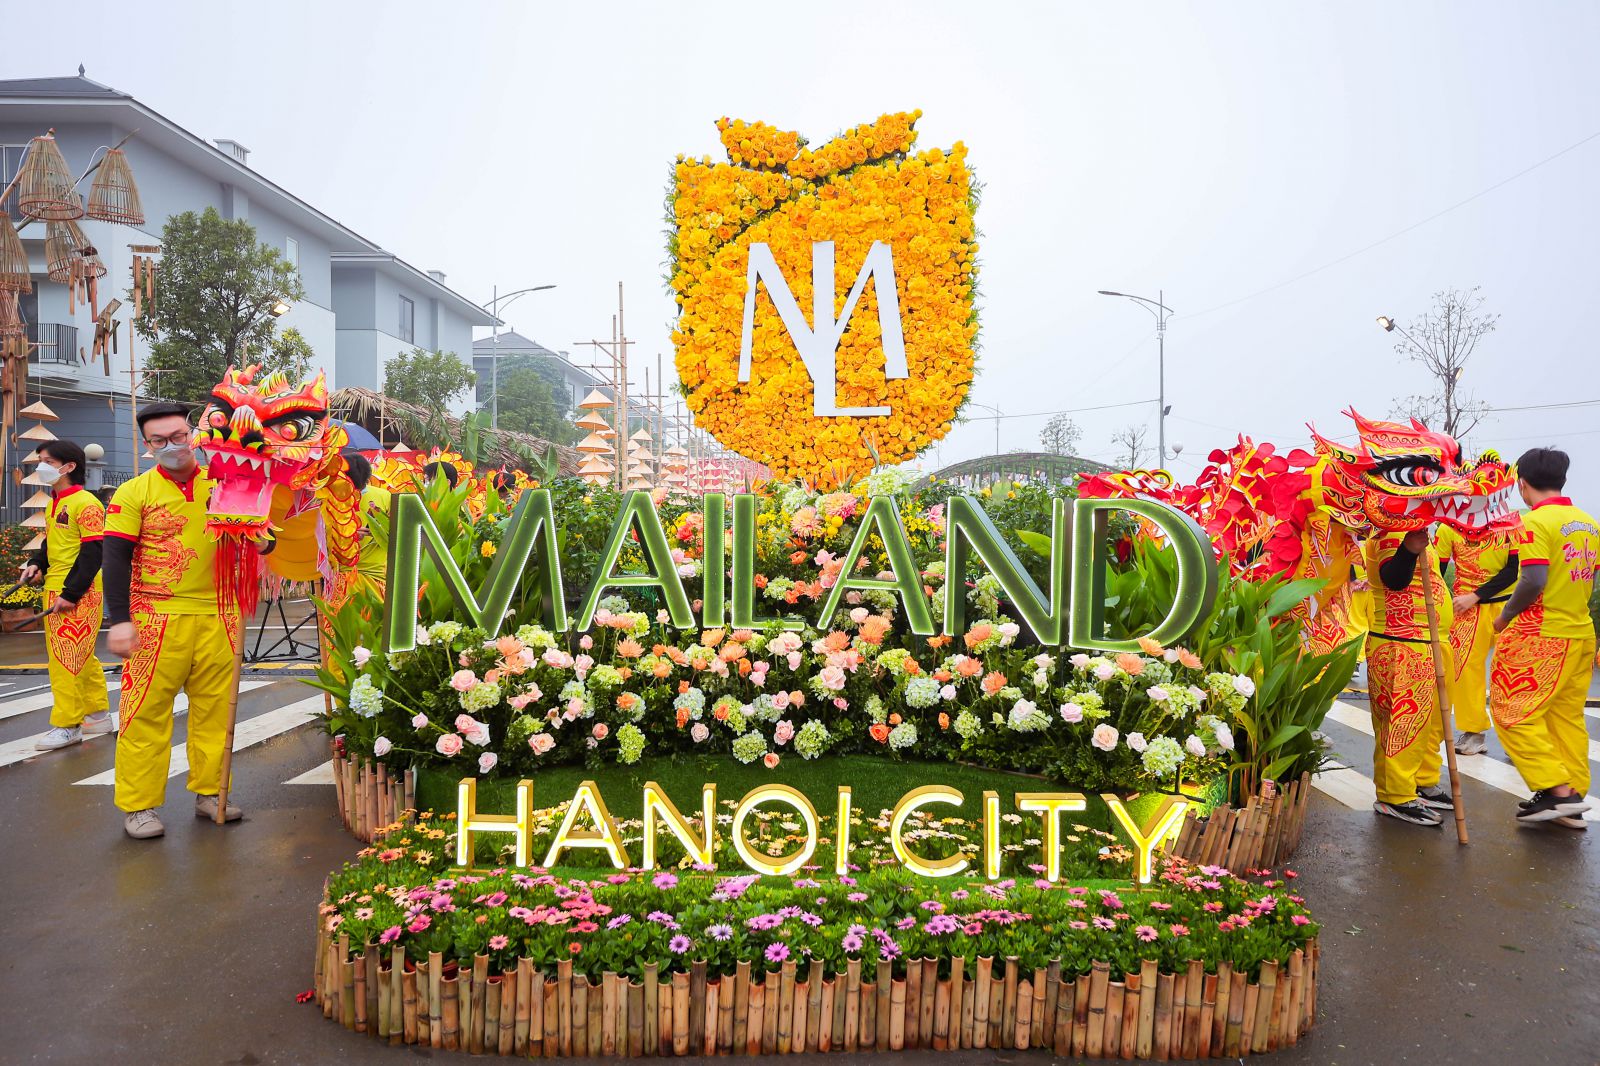 Biểu tượng logo của Mailand Hanoi City là điểm nhấn nổi bật giàu ý nghĩa có hình dáng một bông hoa và cách điệu tựa như cả chiếc khiên đẹp đẽ và che chở mọi cư dân